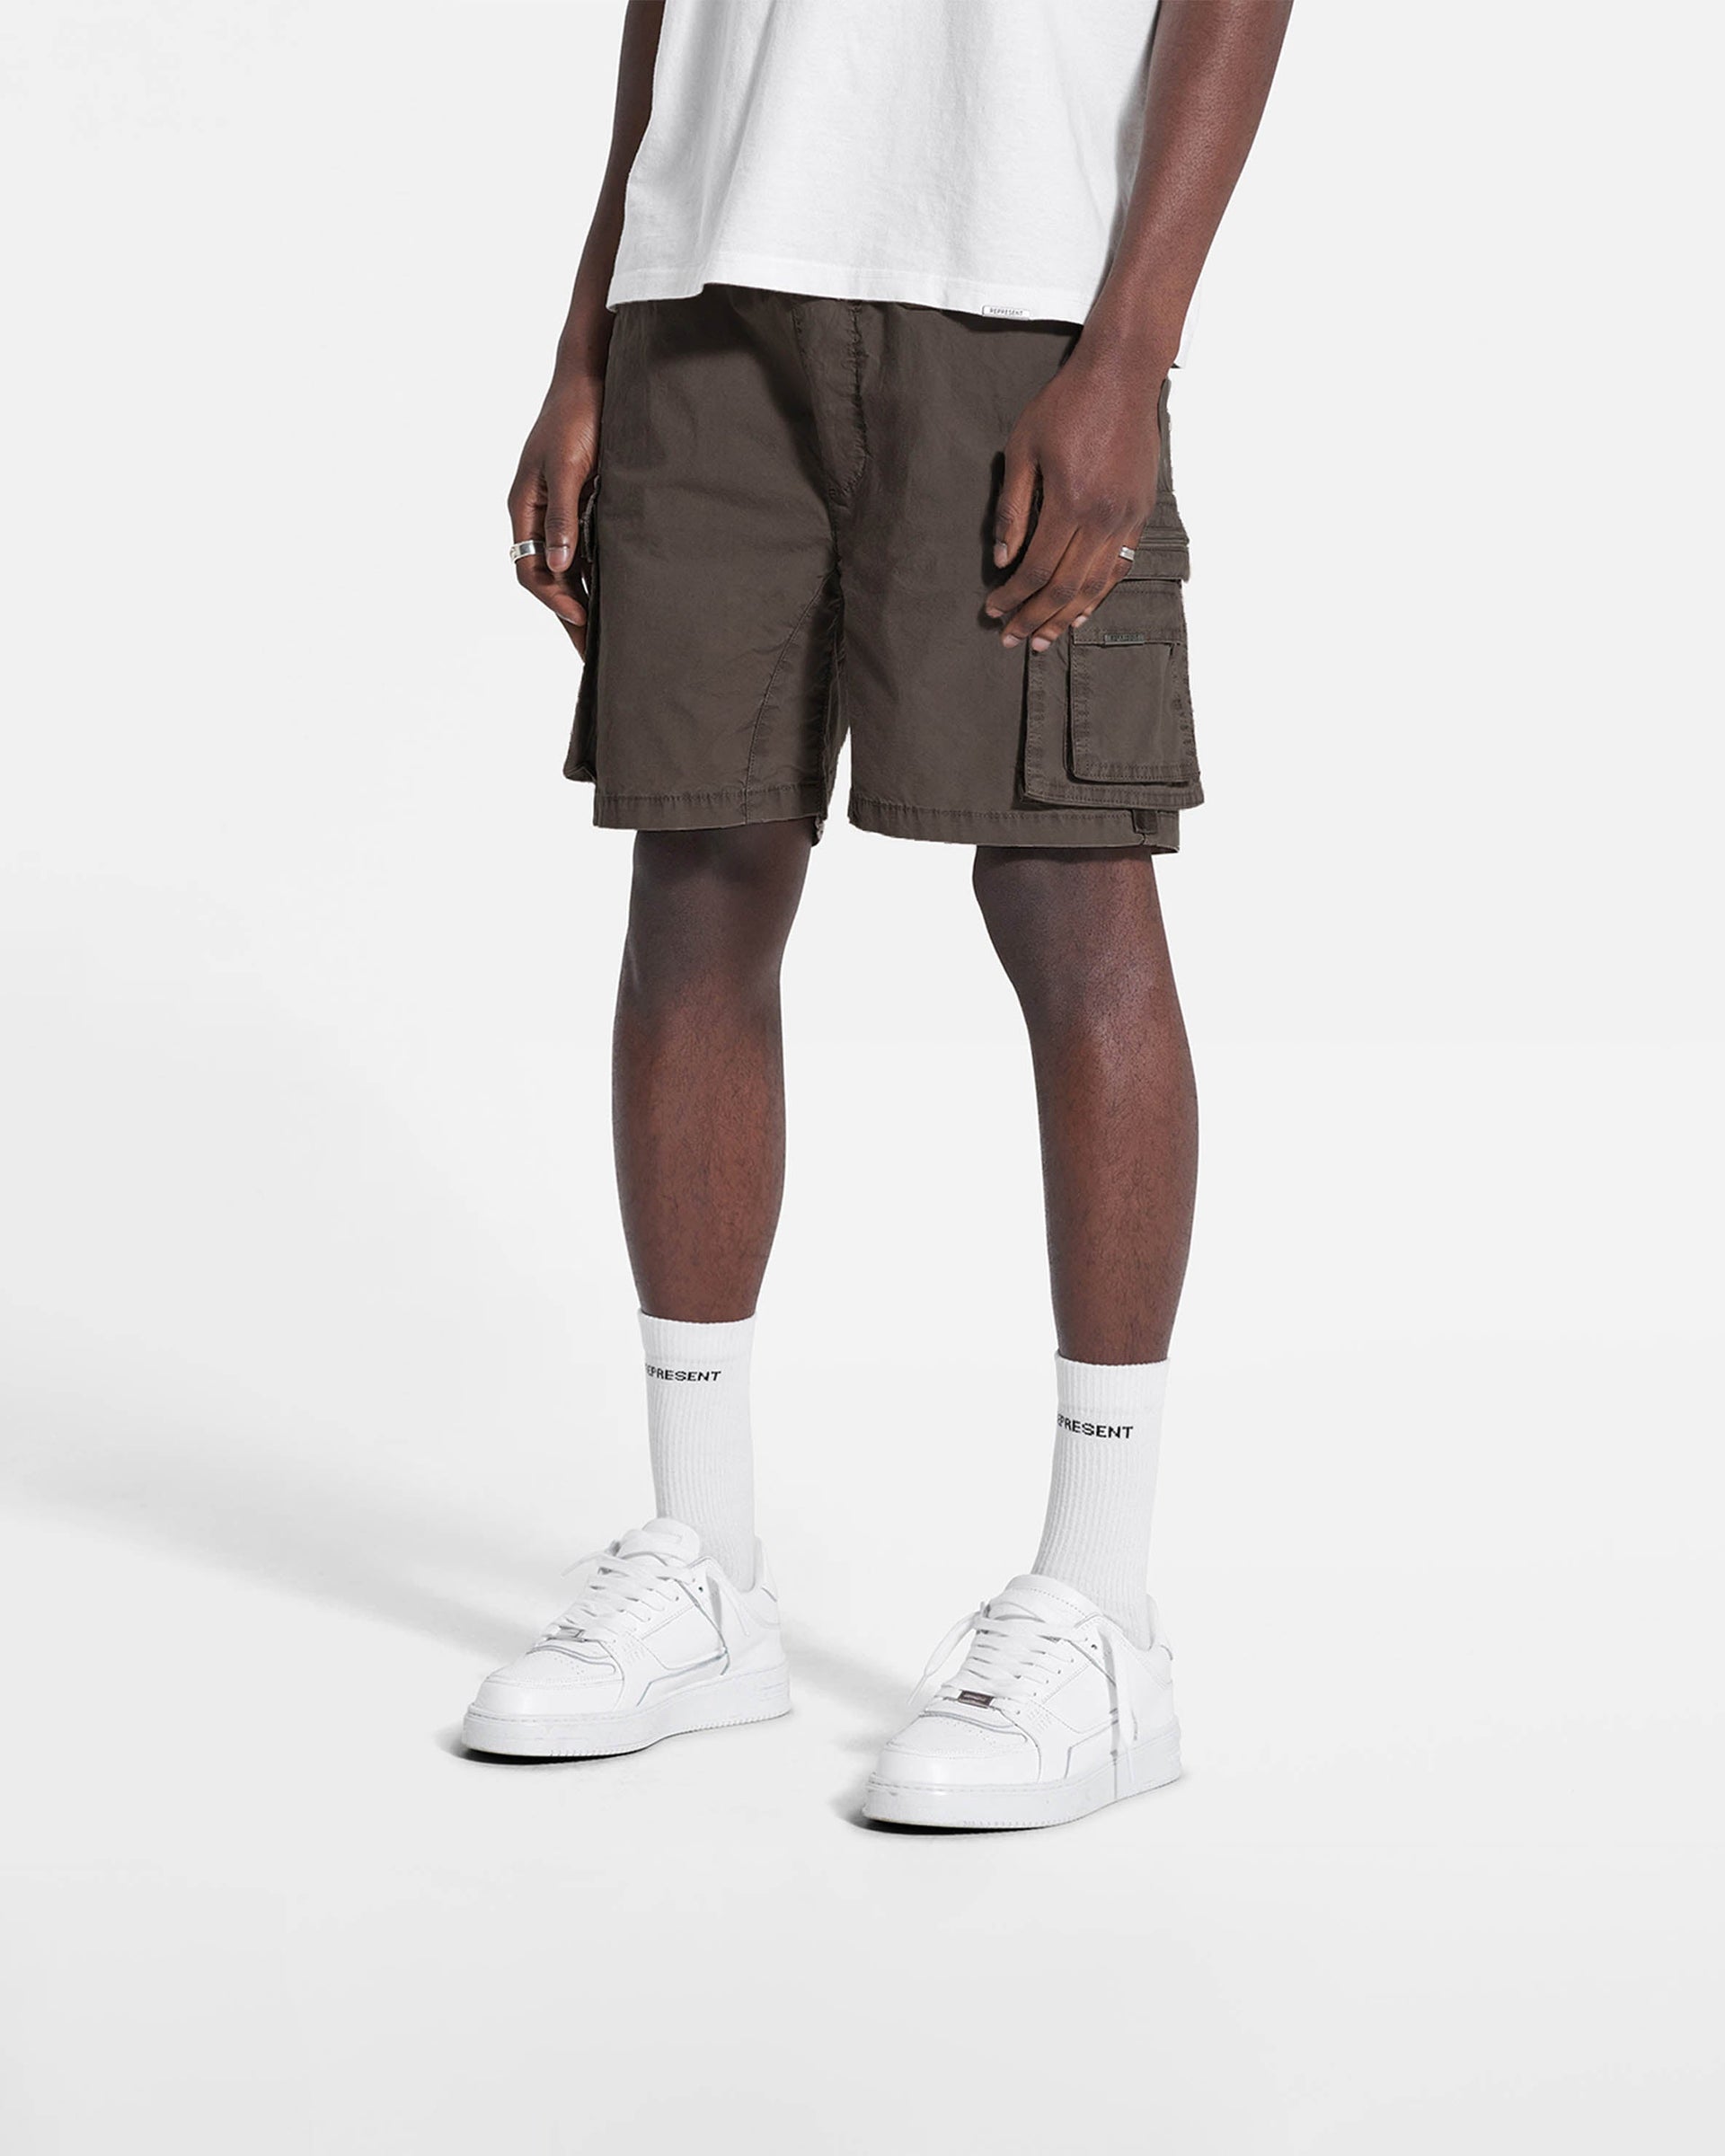 Streetwear Shorts | Men's Shorts | REPRESENT CLO